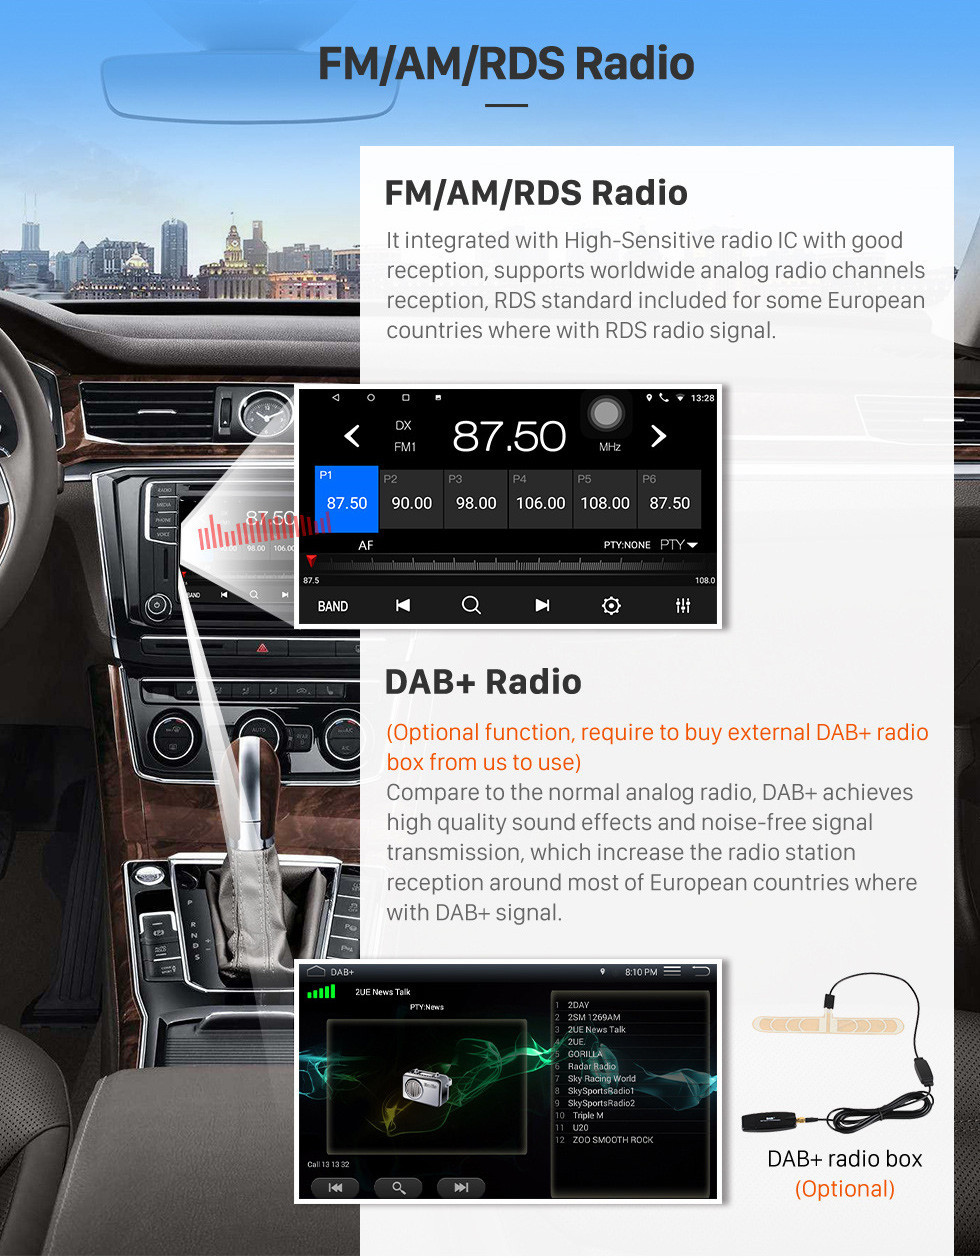 Seicane 2006-2011 Hyundai Accent écran tactile Android 10.0 Unité de tête Bluetooth stéréo avec musique AUX WIFI DAB + OBD2 DVR Commande au volant